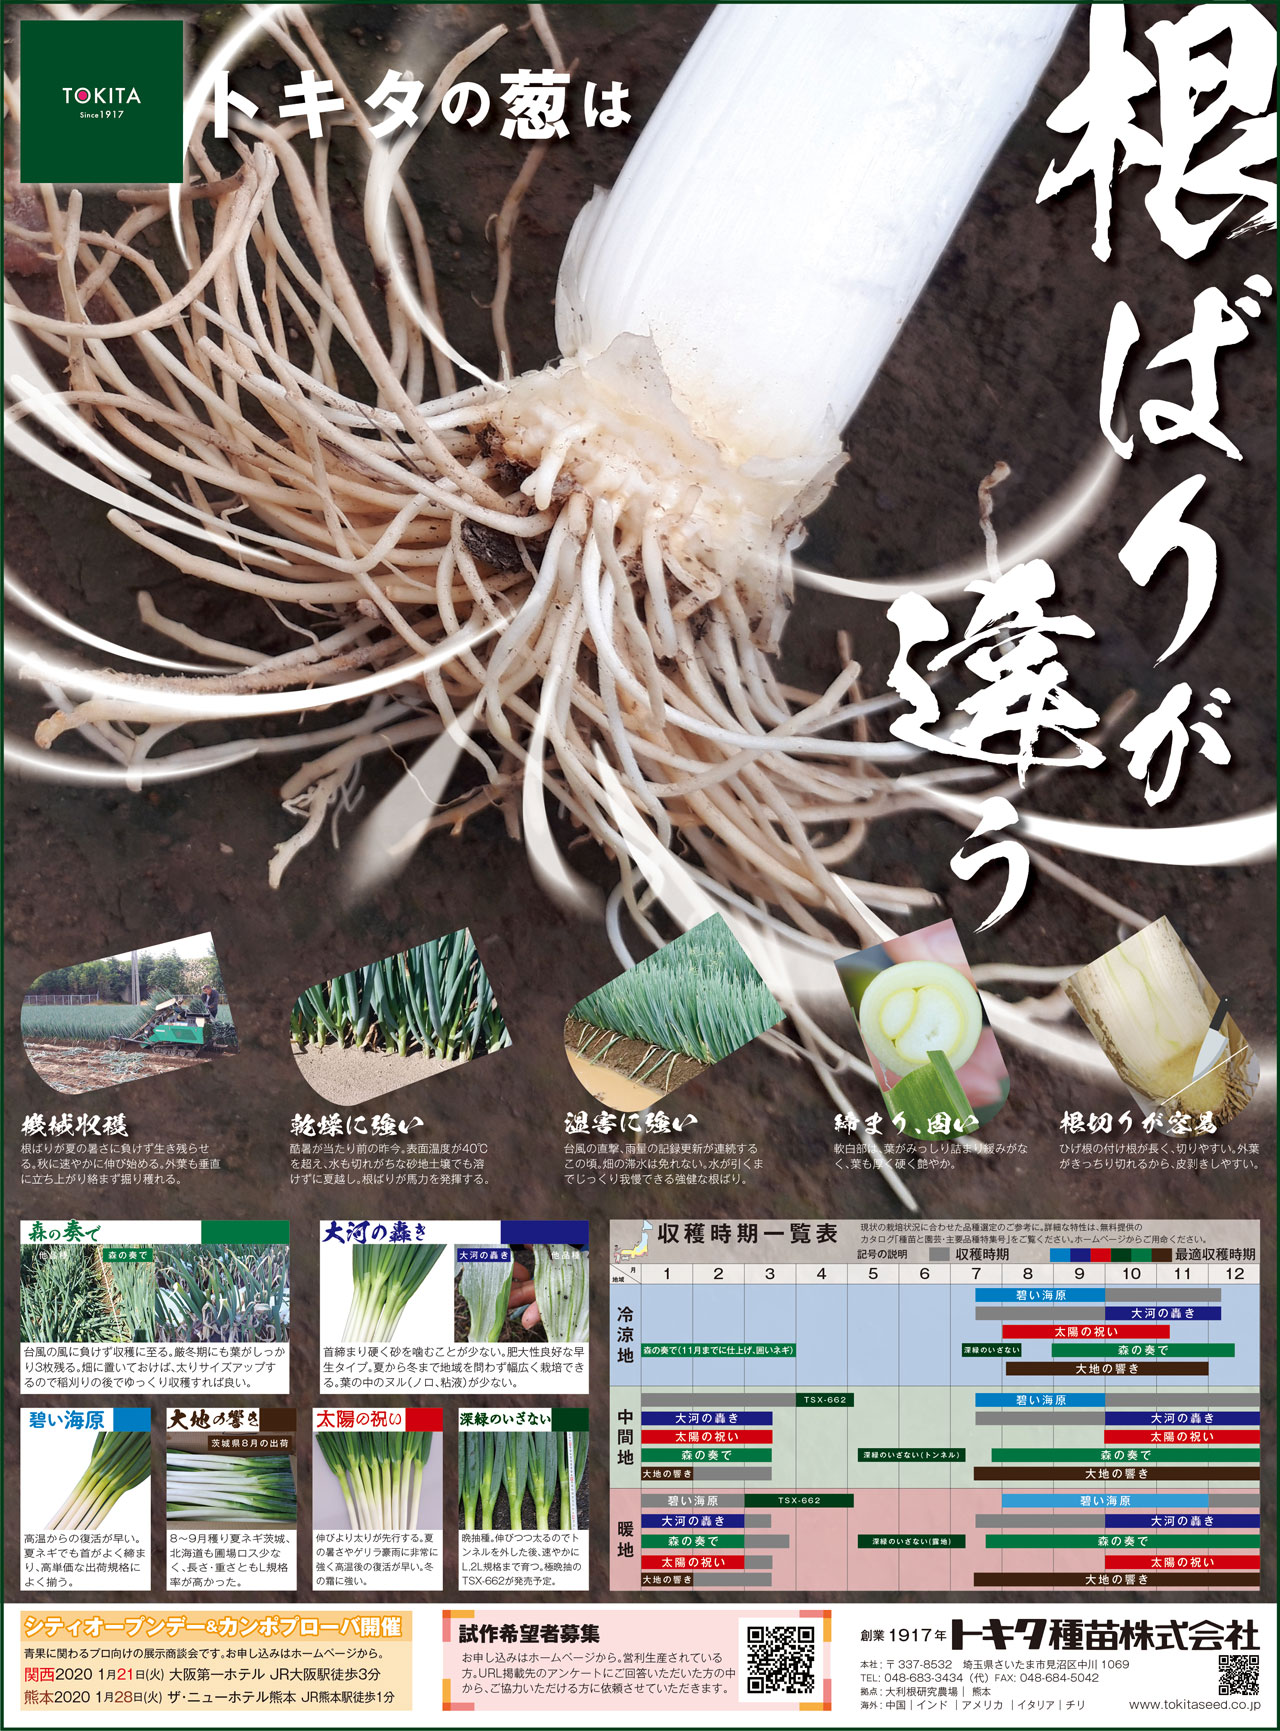 野菜と花の品種開発 種苗メーカートキタ種苗公式サイトのおしらせ一覧ページ